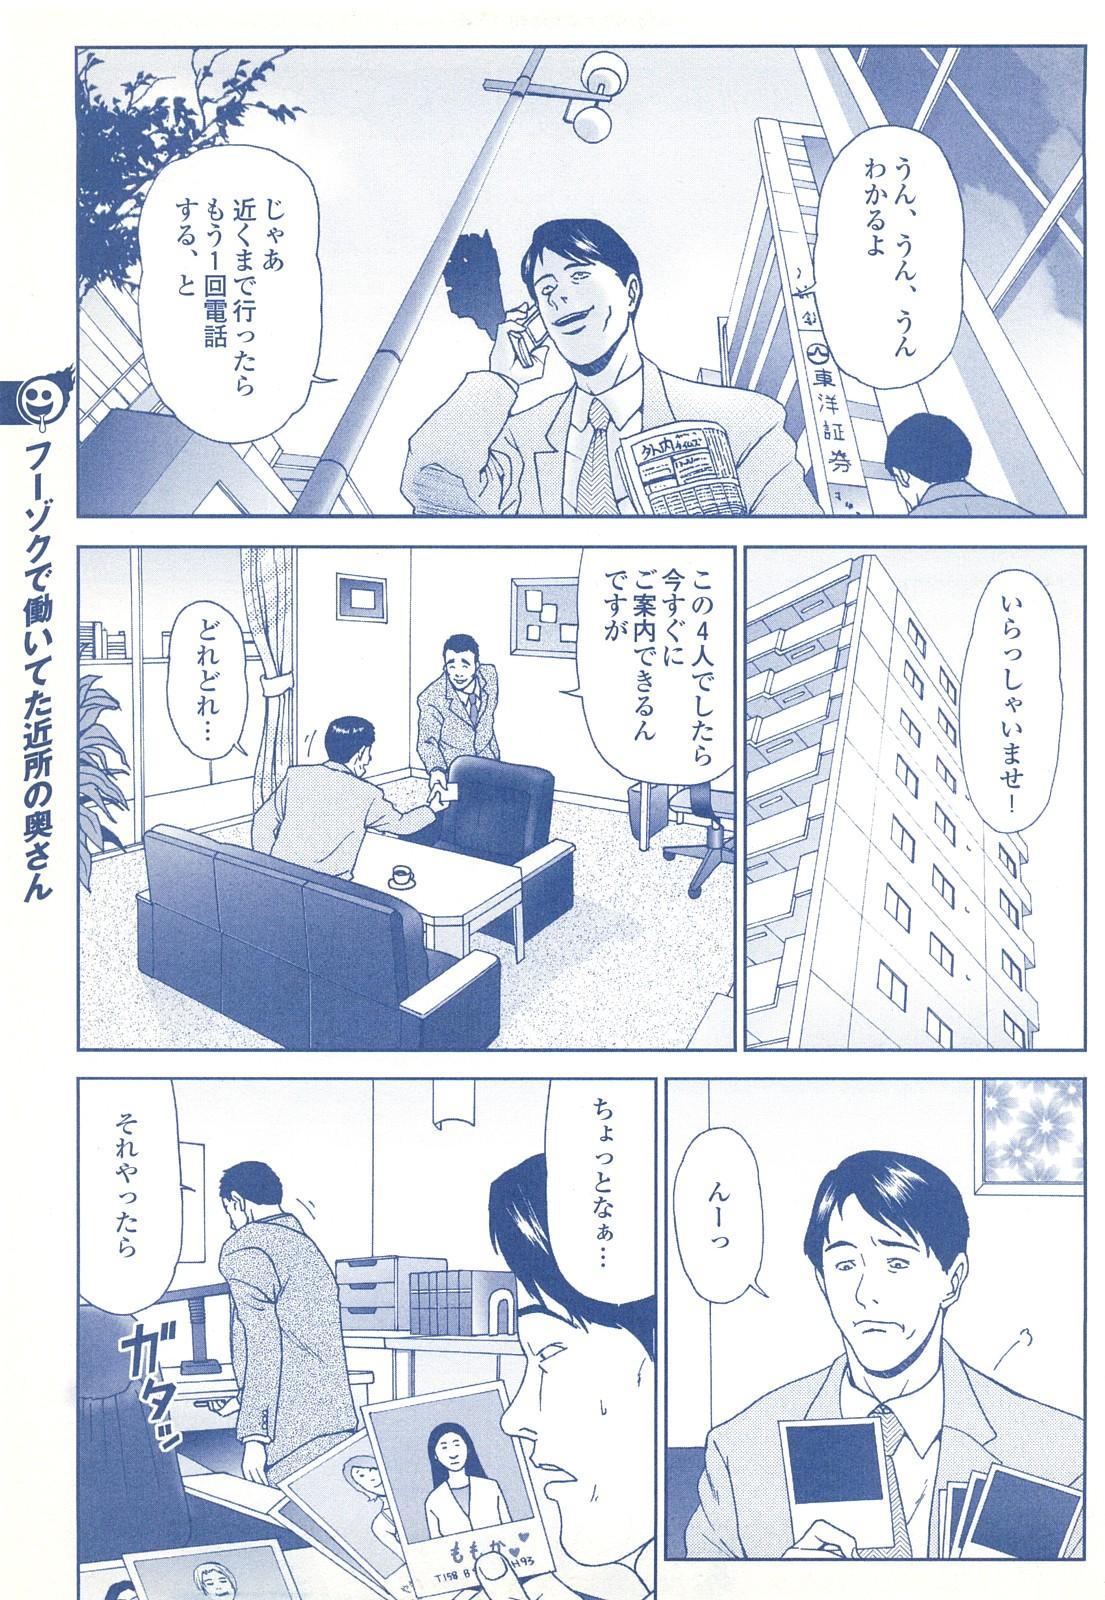 コミック裏モノJAPAN Vol.18 今井のりたつスペシャル号 194